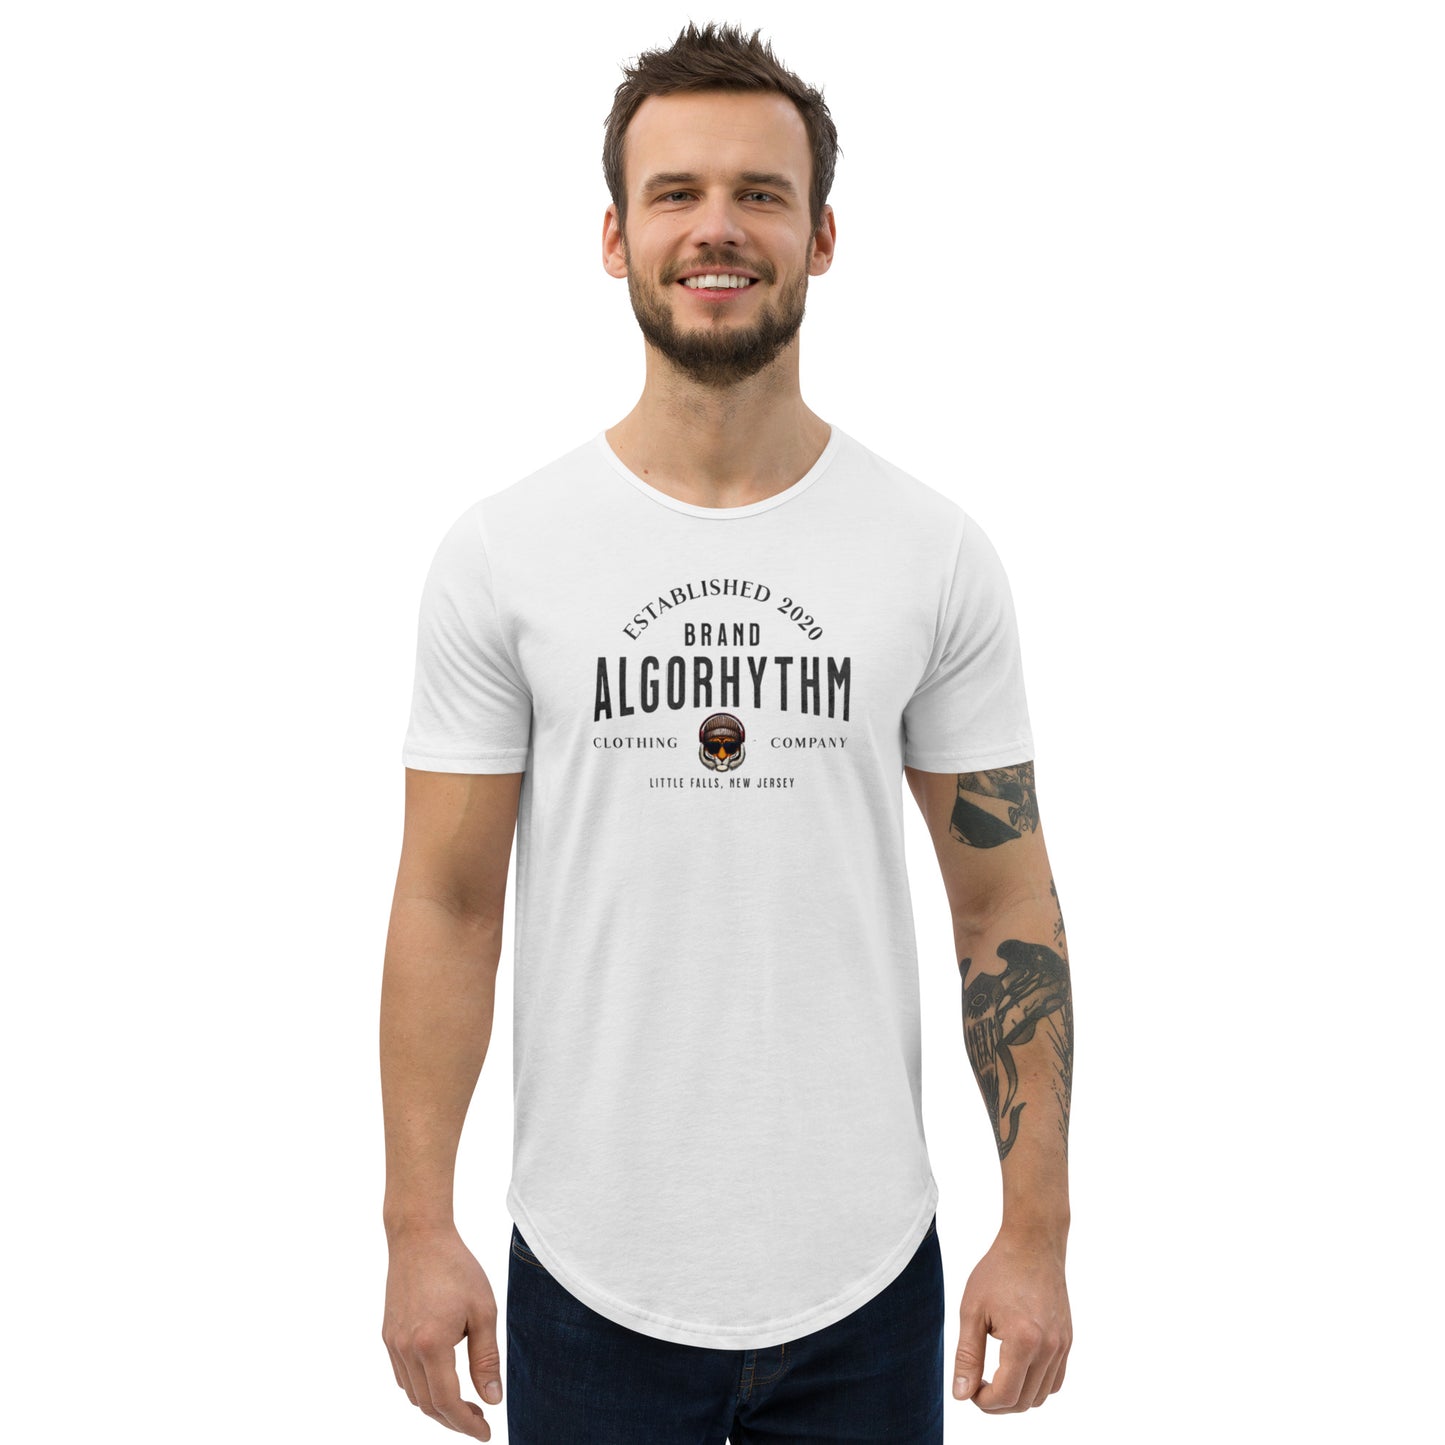 Algorhythm: Brand Algorhythm T-Shirt